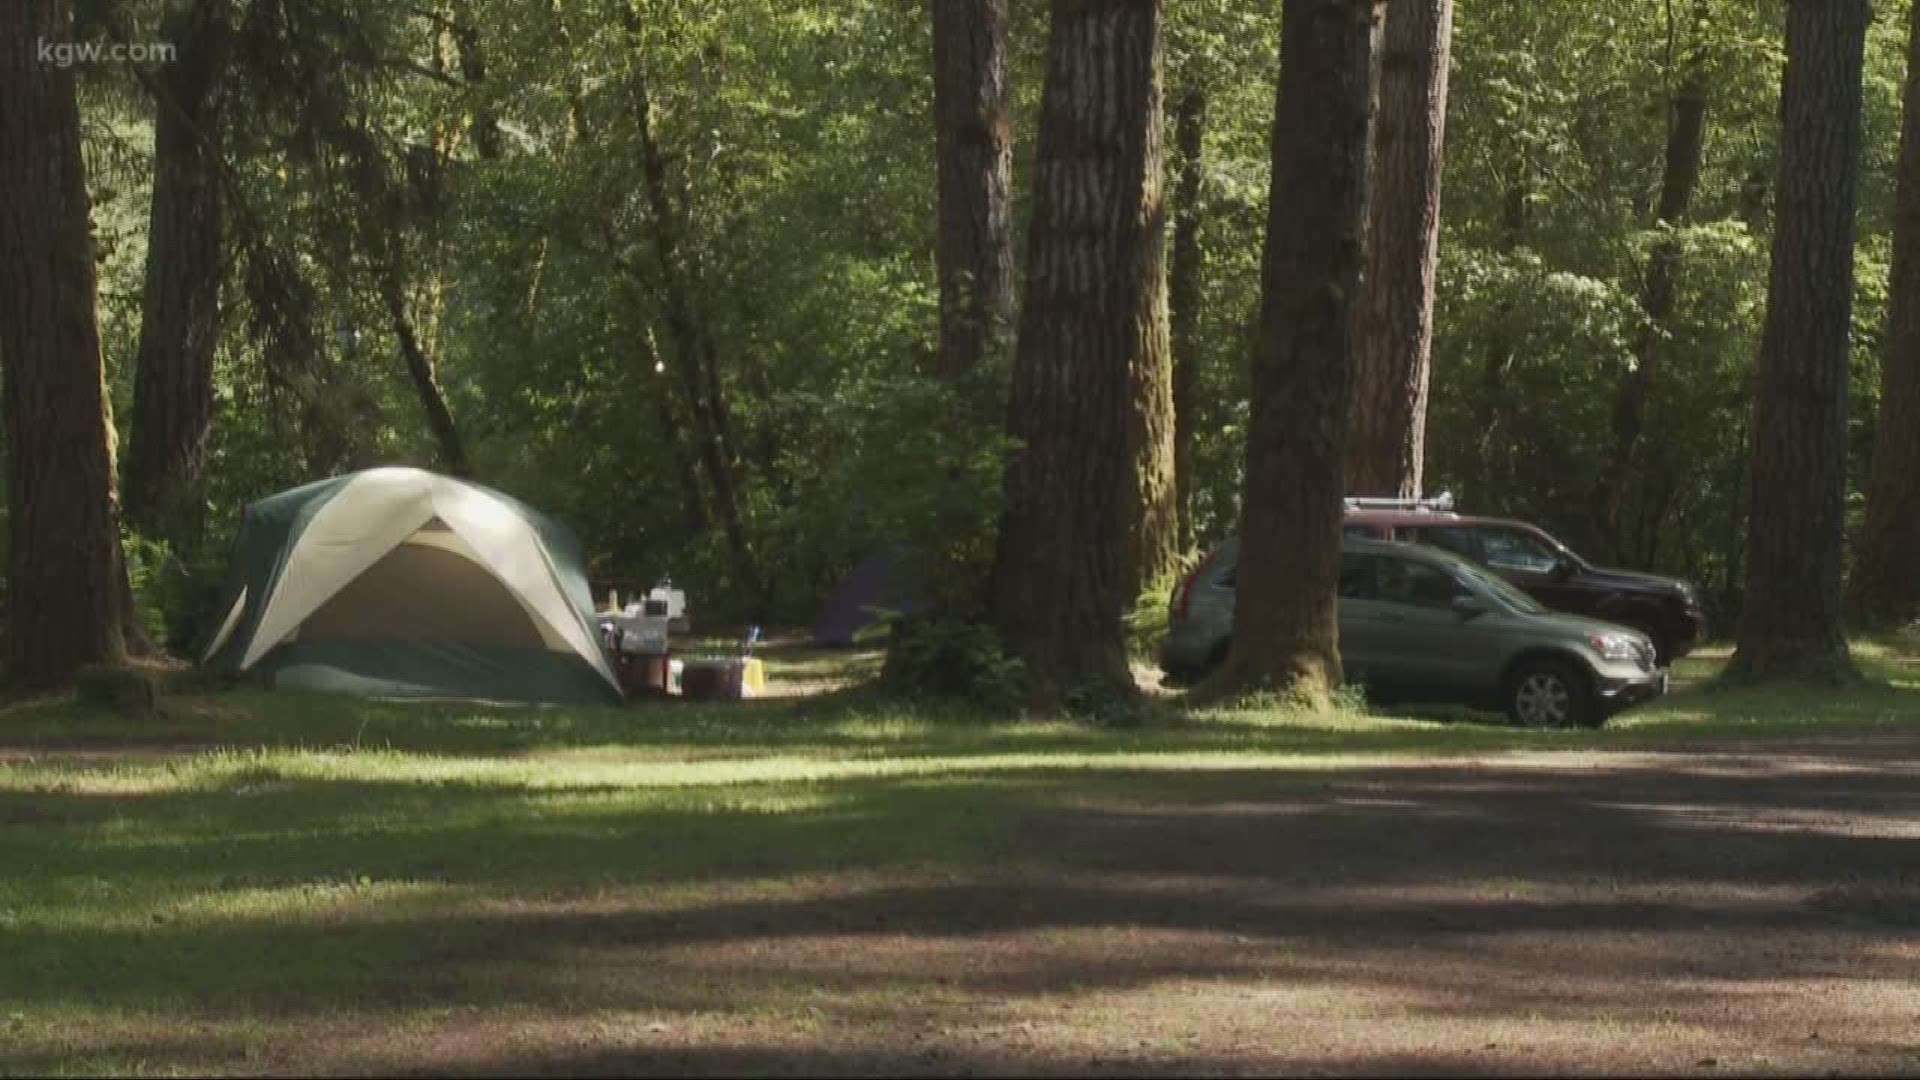 Grant's Getaways: Trask River Camping